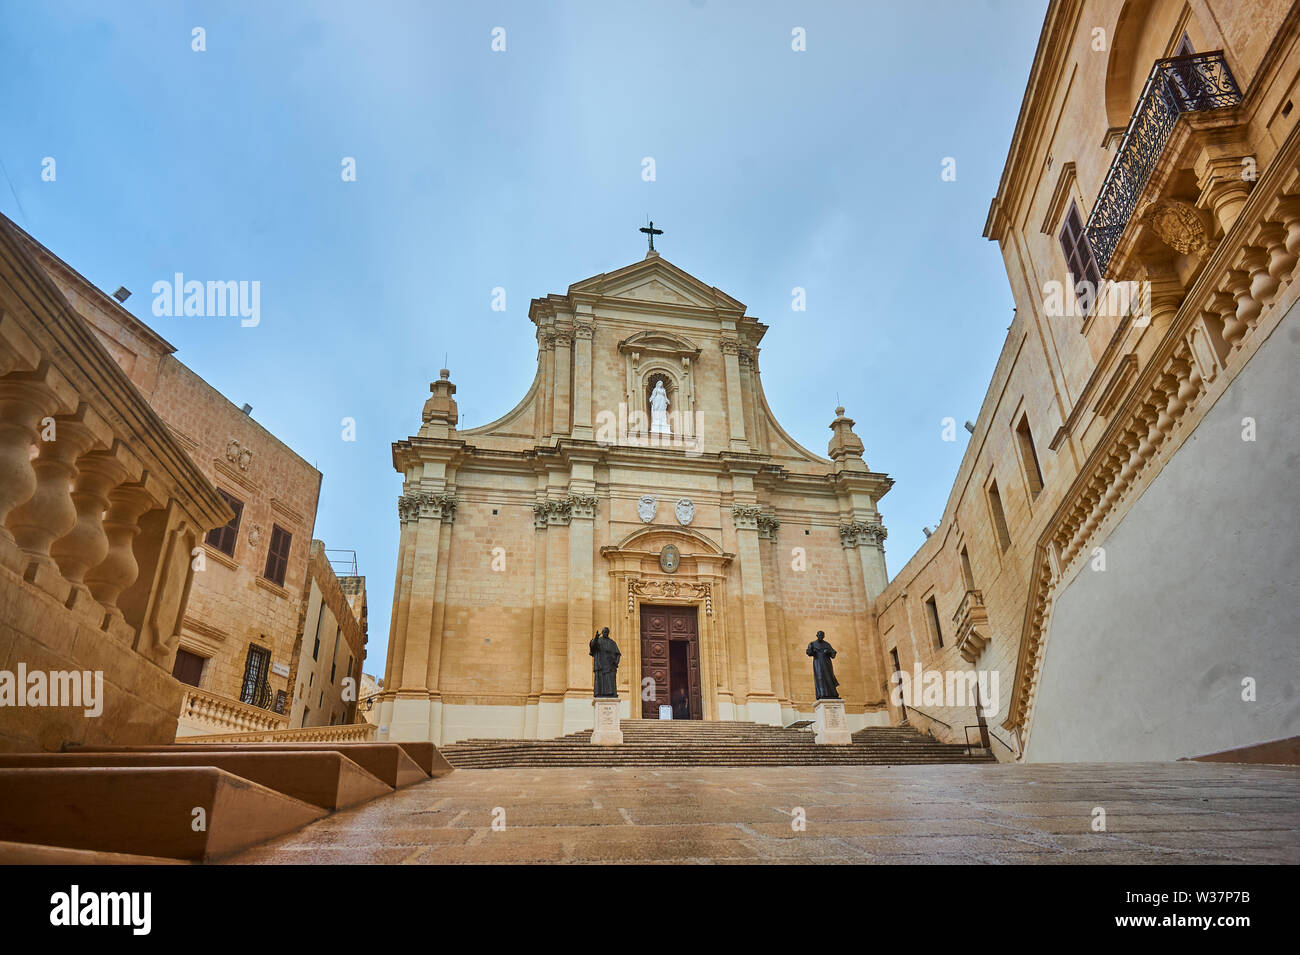 Kathedrale Santa Marija in der im Mittelalter erbauten Festung Cittadella en Victoria meltesisch Rabat auf der Insel Gozo zugehörig zu Mata. Foto de stock